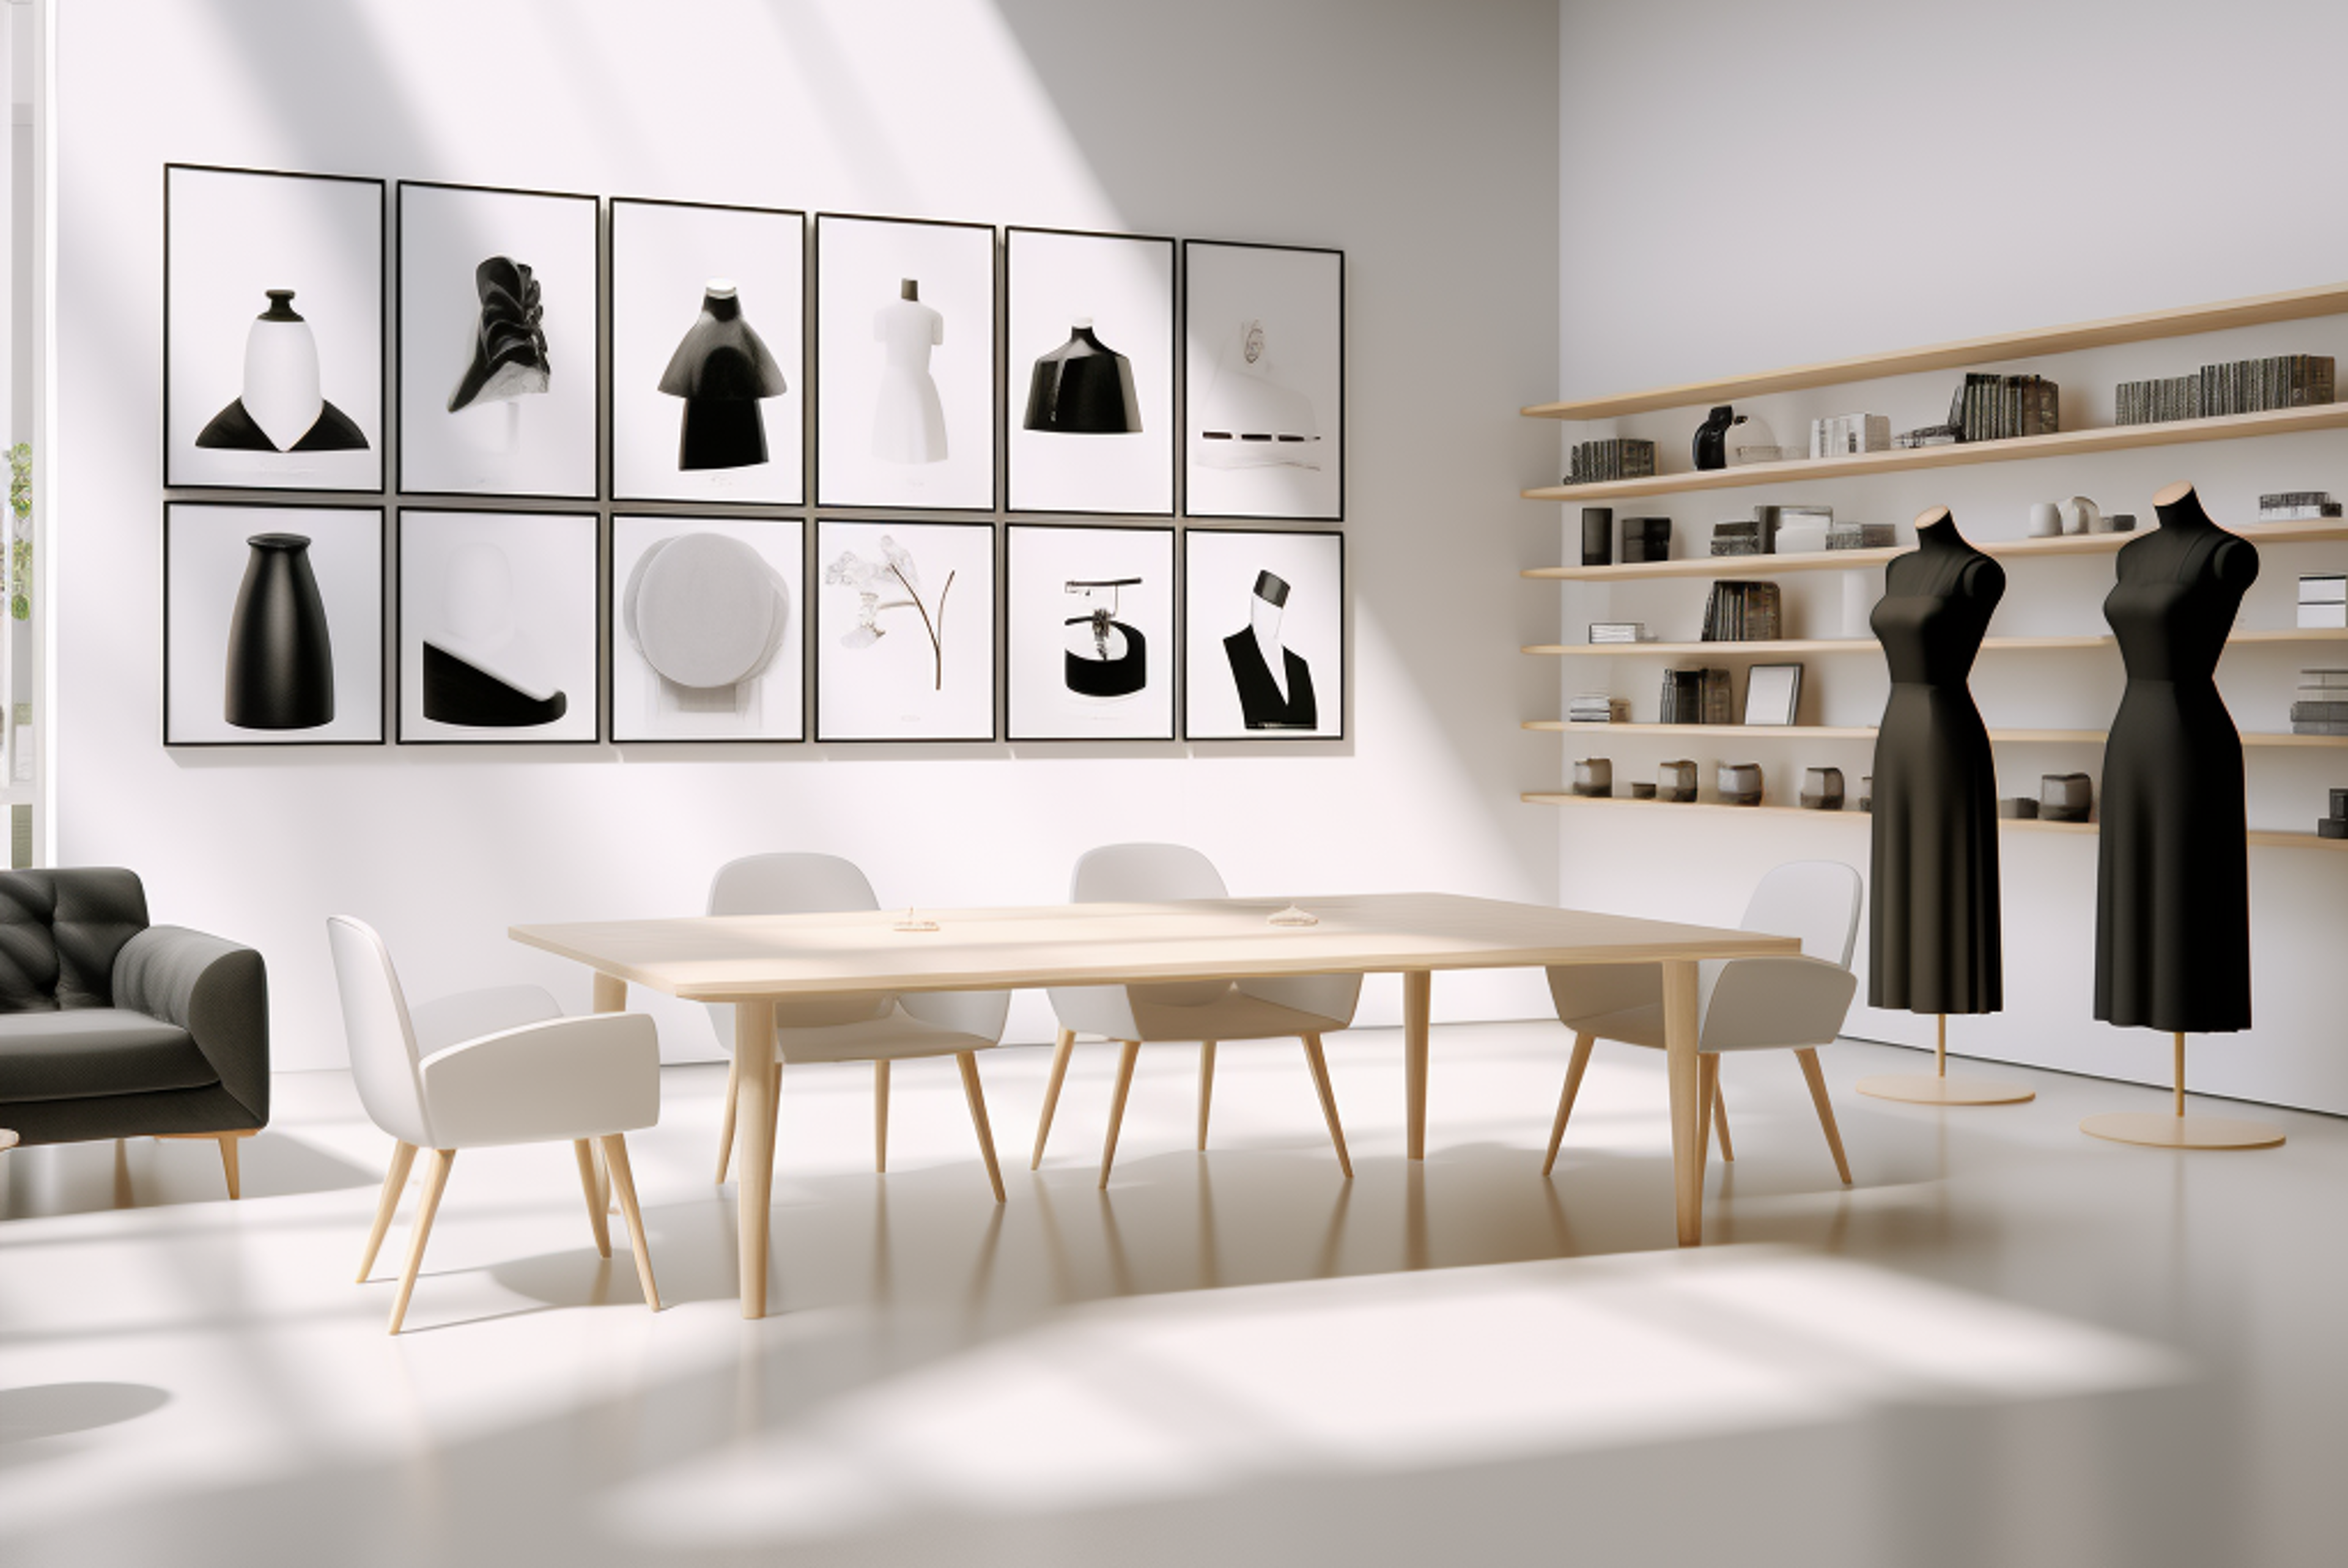 Un espai d'estudi serè amb exposicions de moda monocromàtiques i una disposició de mobles moderns i elegants.